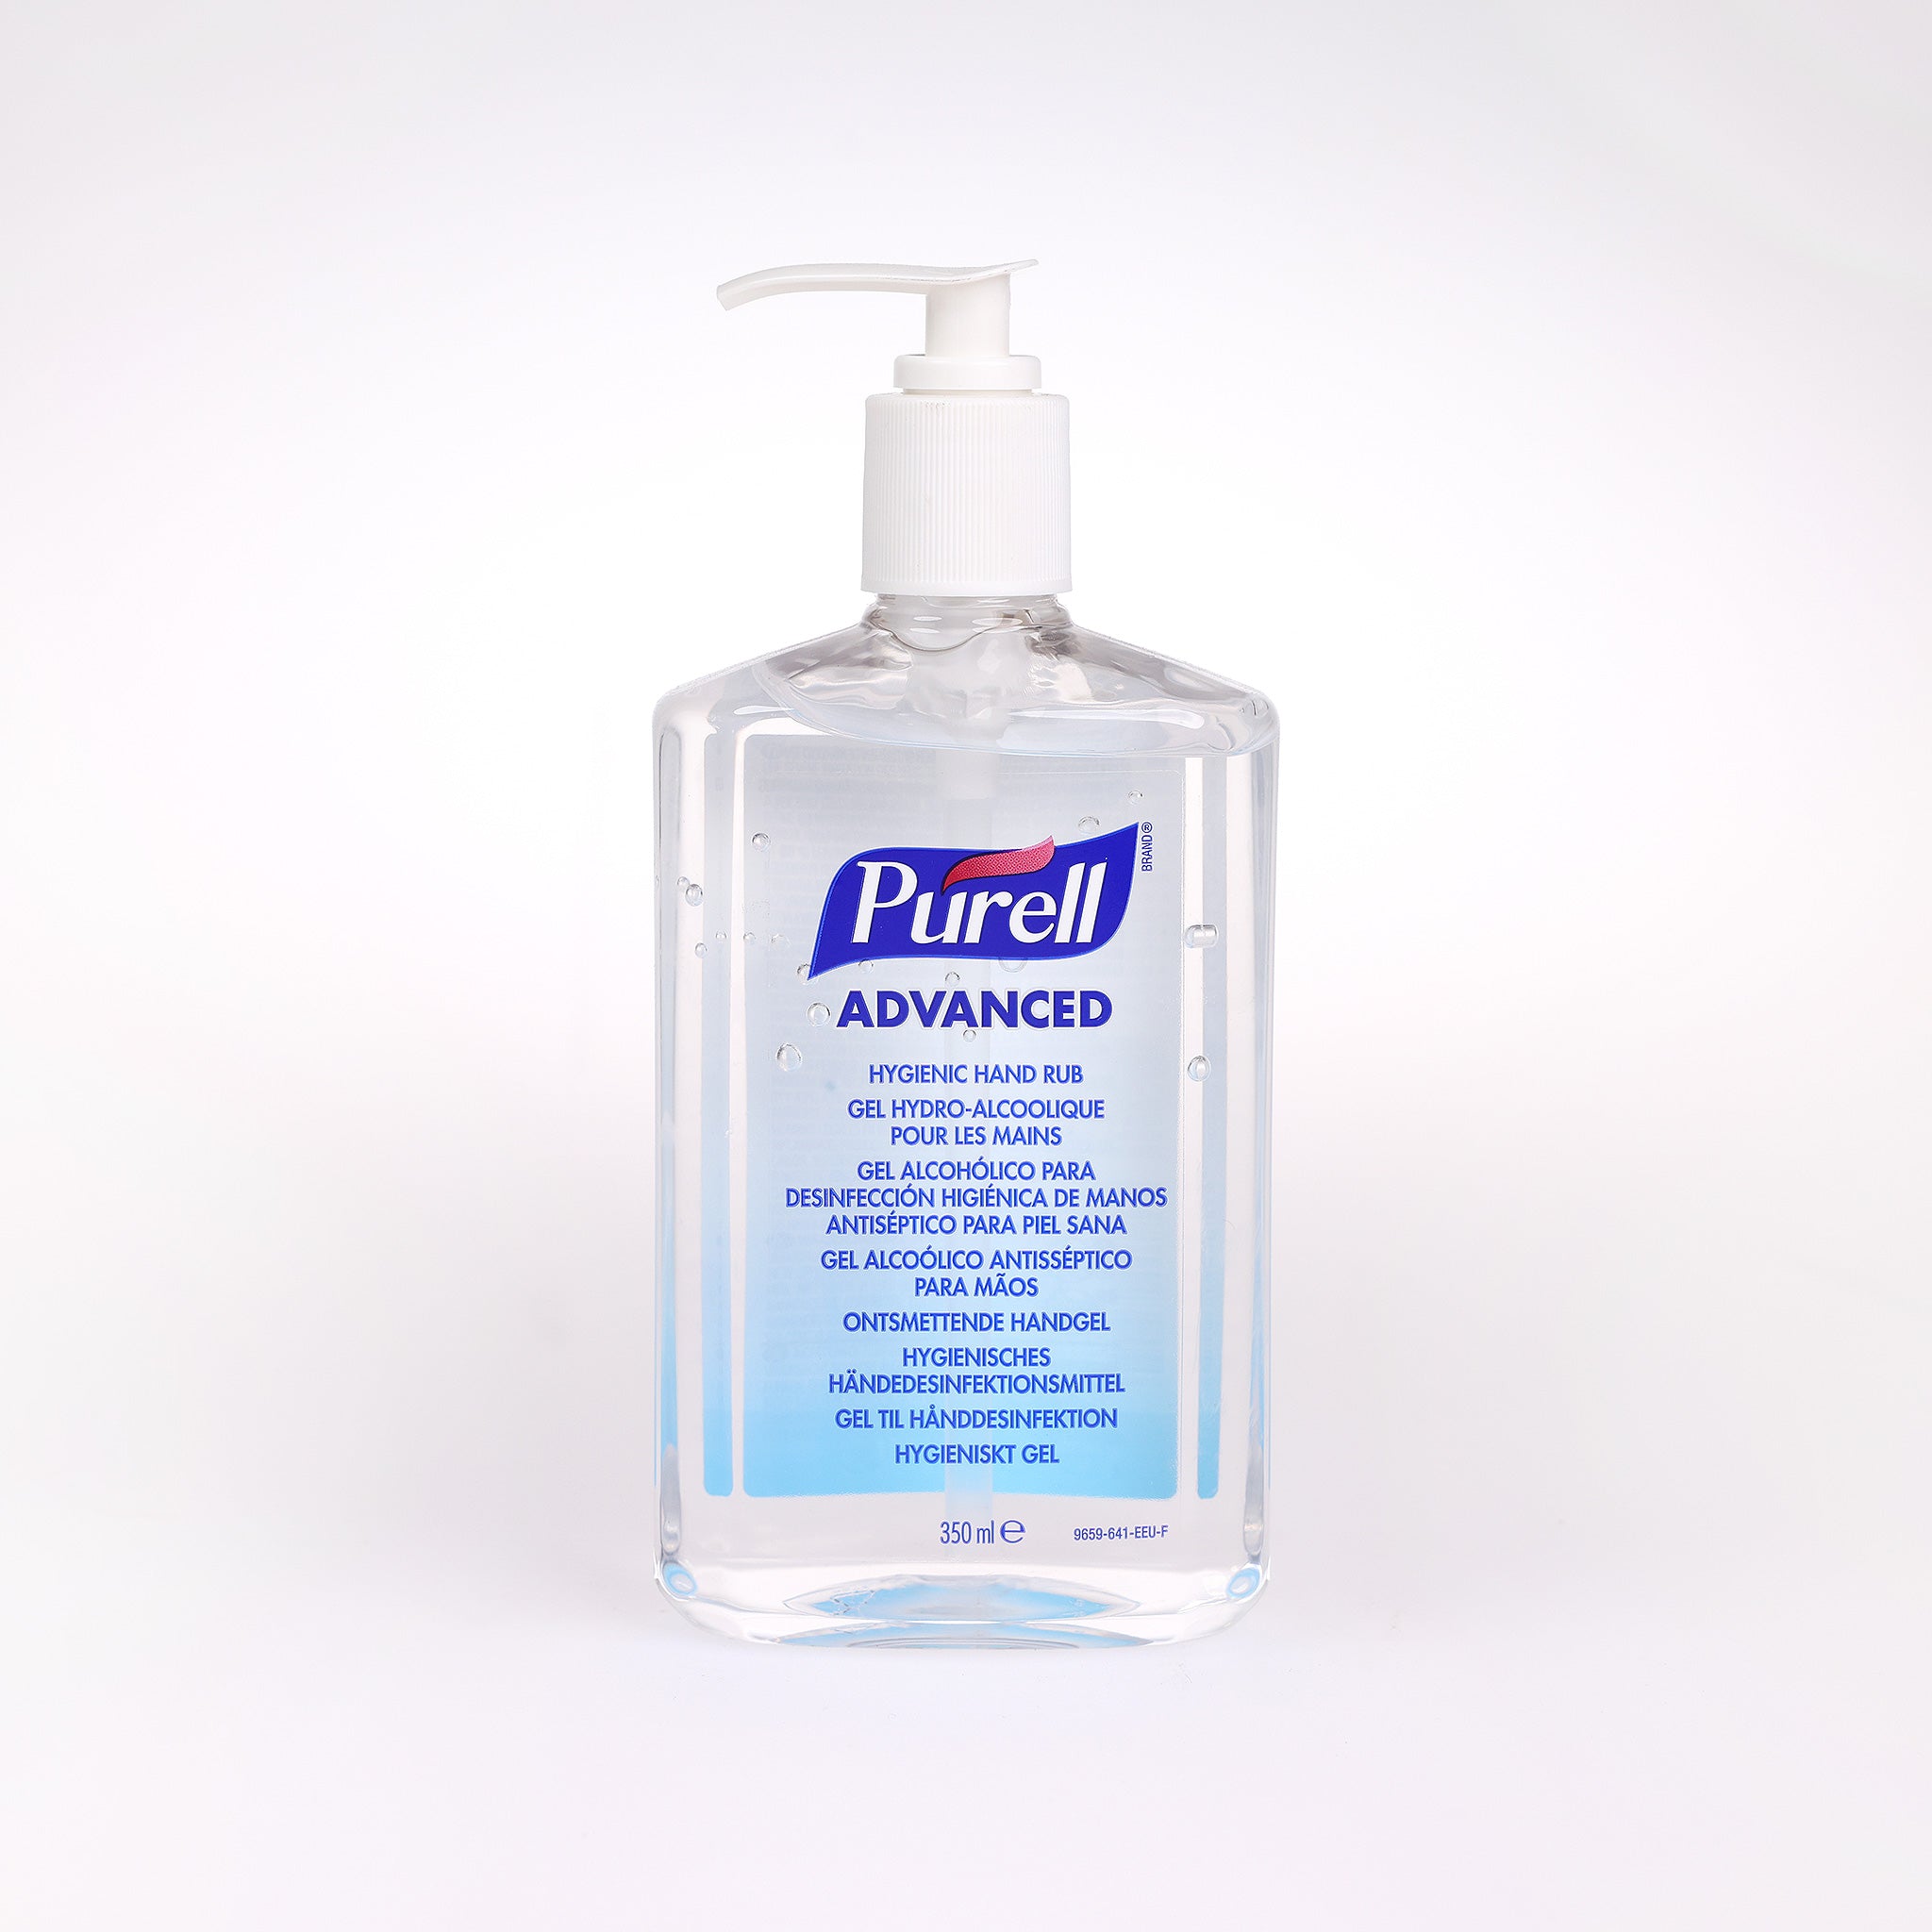 Hånddesinfektion Purell Advanced Gel med pumpe beskytter effektivt mod bakterier. Kommer i en praktisk 350 ml. pumpeflaske.